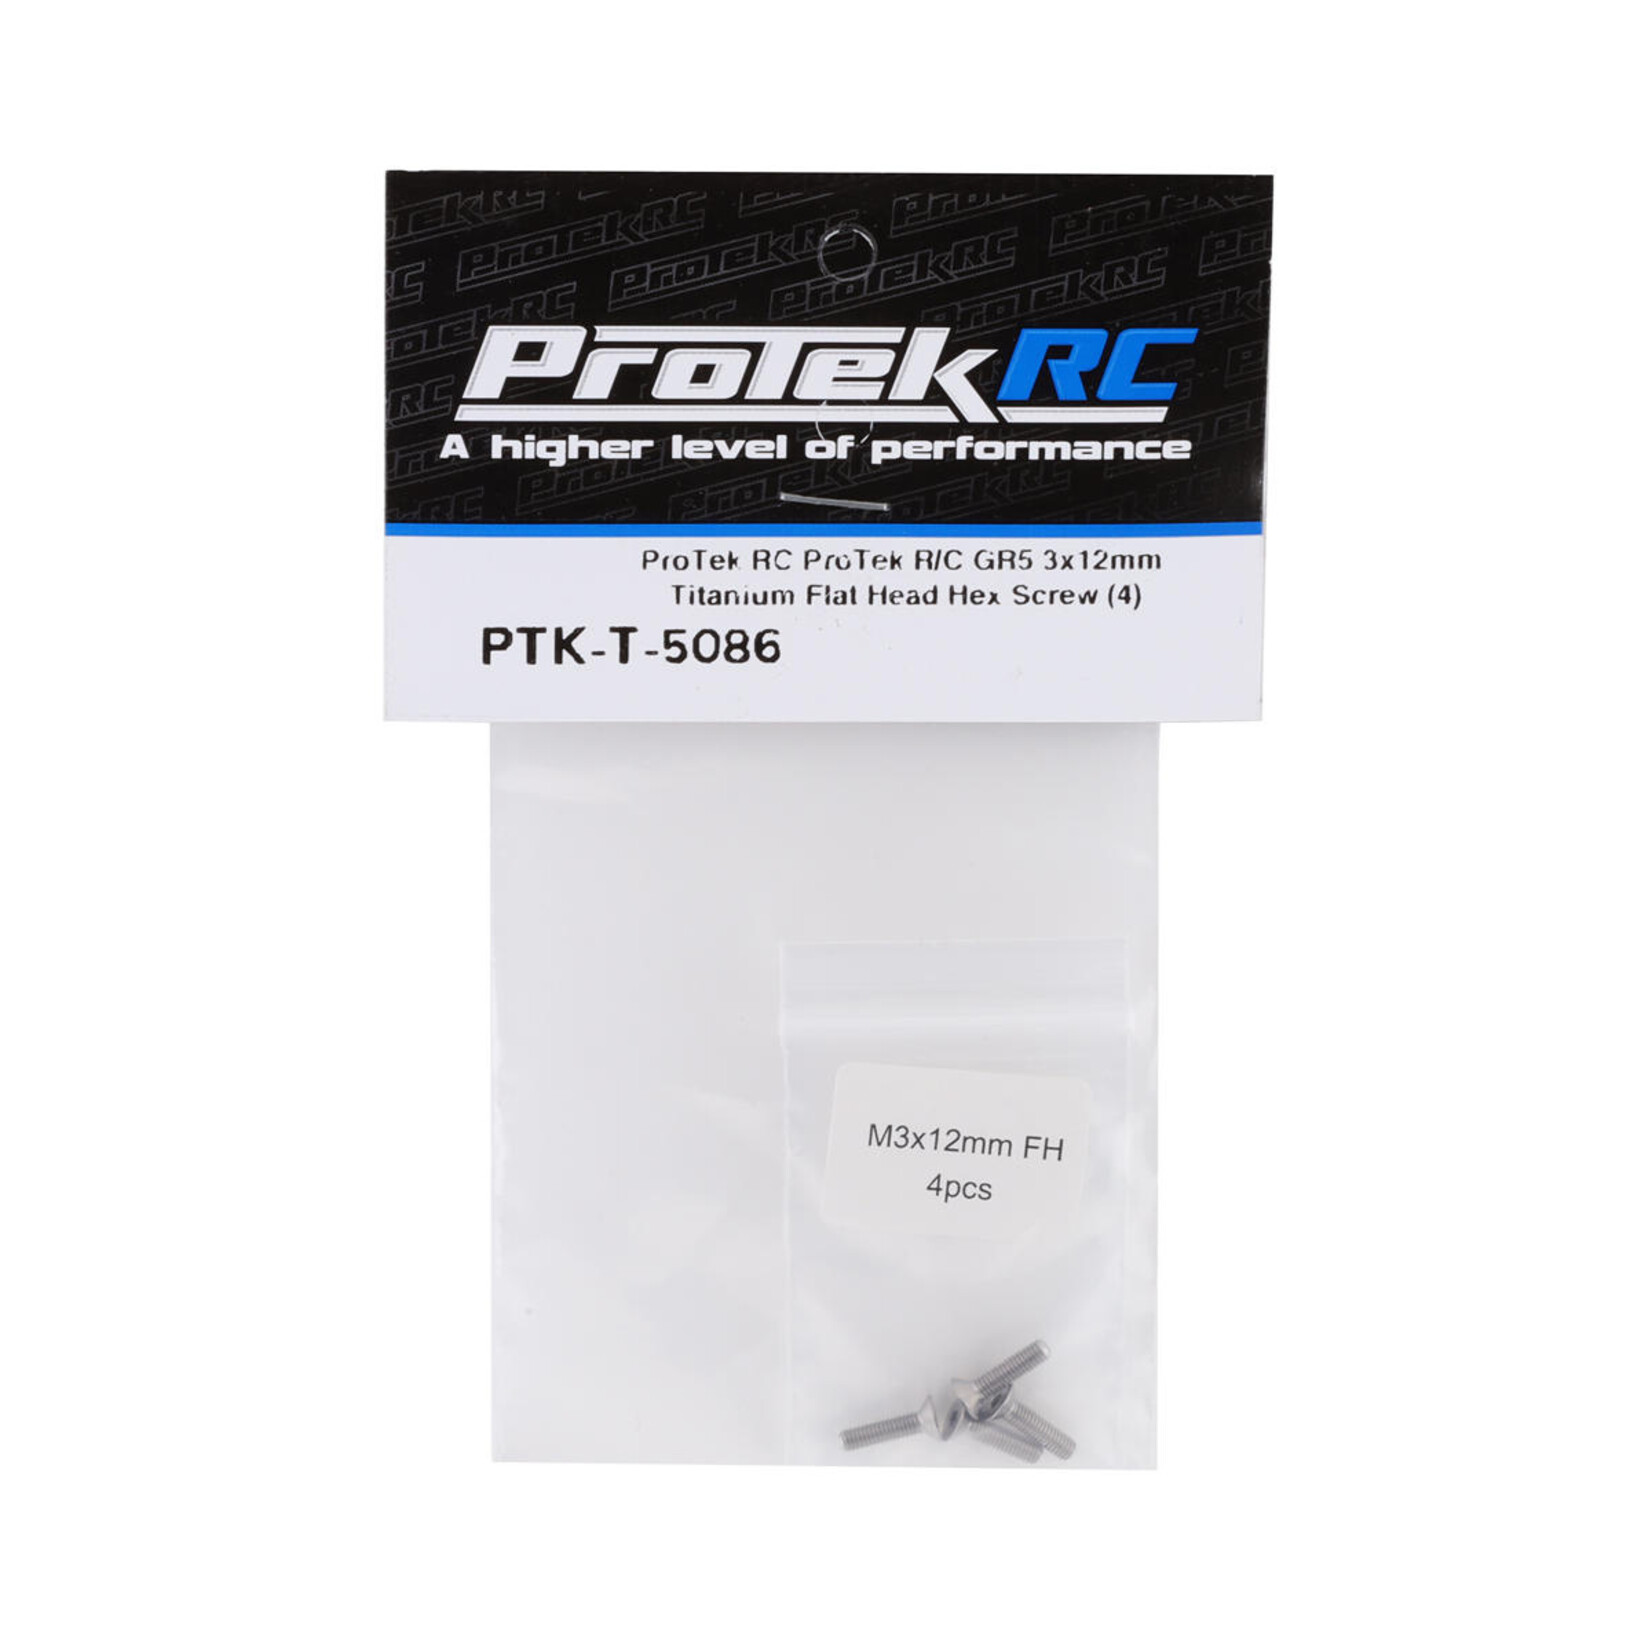 ProTek RC ProTek RC 3x12mm "Grade 5" Titanium Flat Head Hex Screw (4) #PTK-T-5086